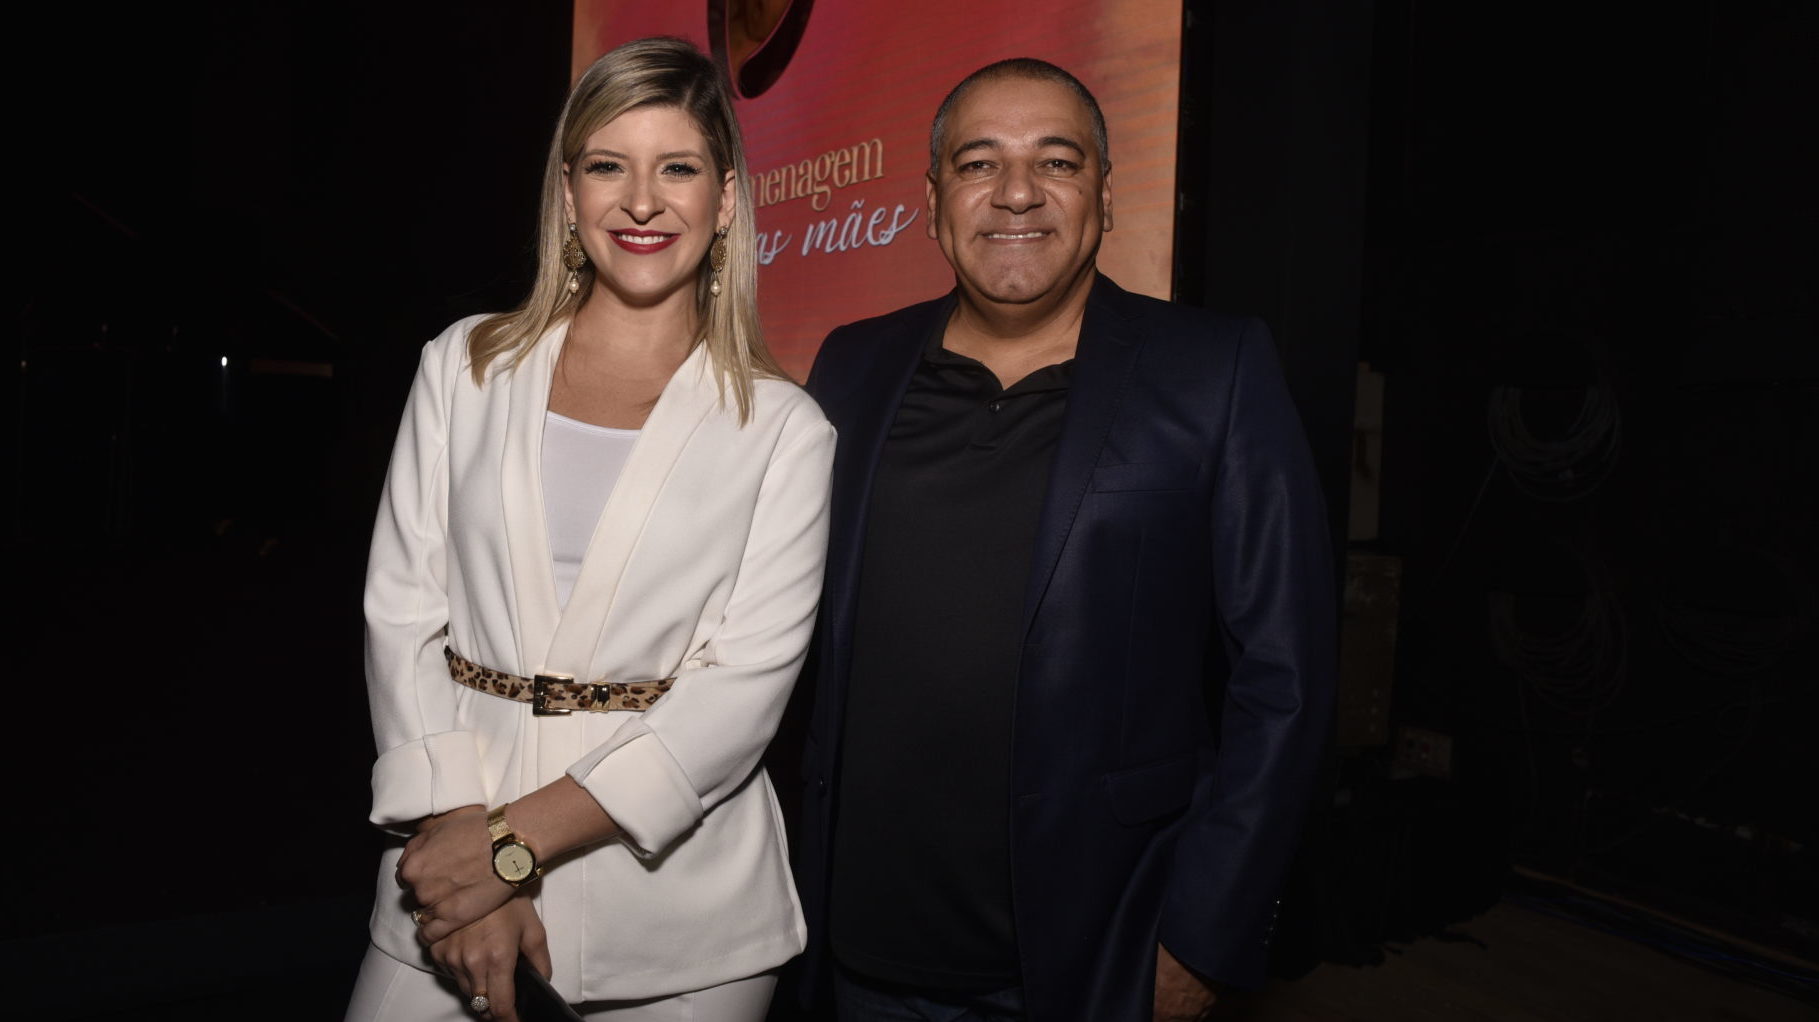 Lívia Mendonça, apresentadora do Balanço Geral Rio e Fabiano Freitas, presidente da Record TV Rio